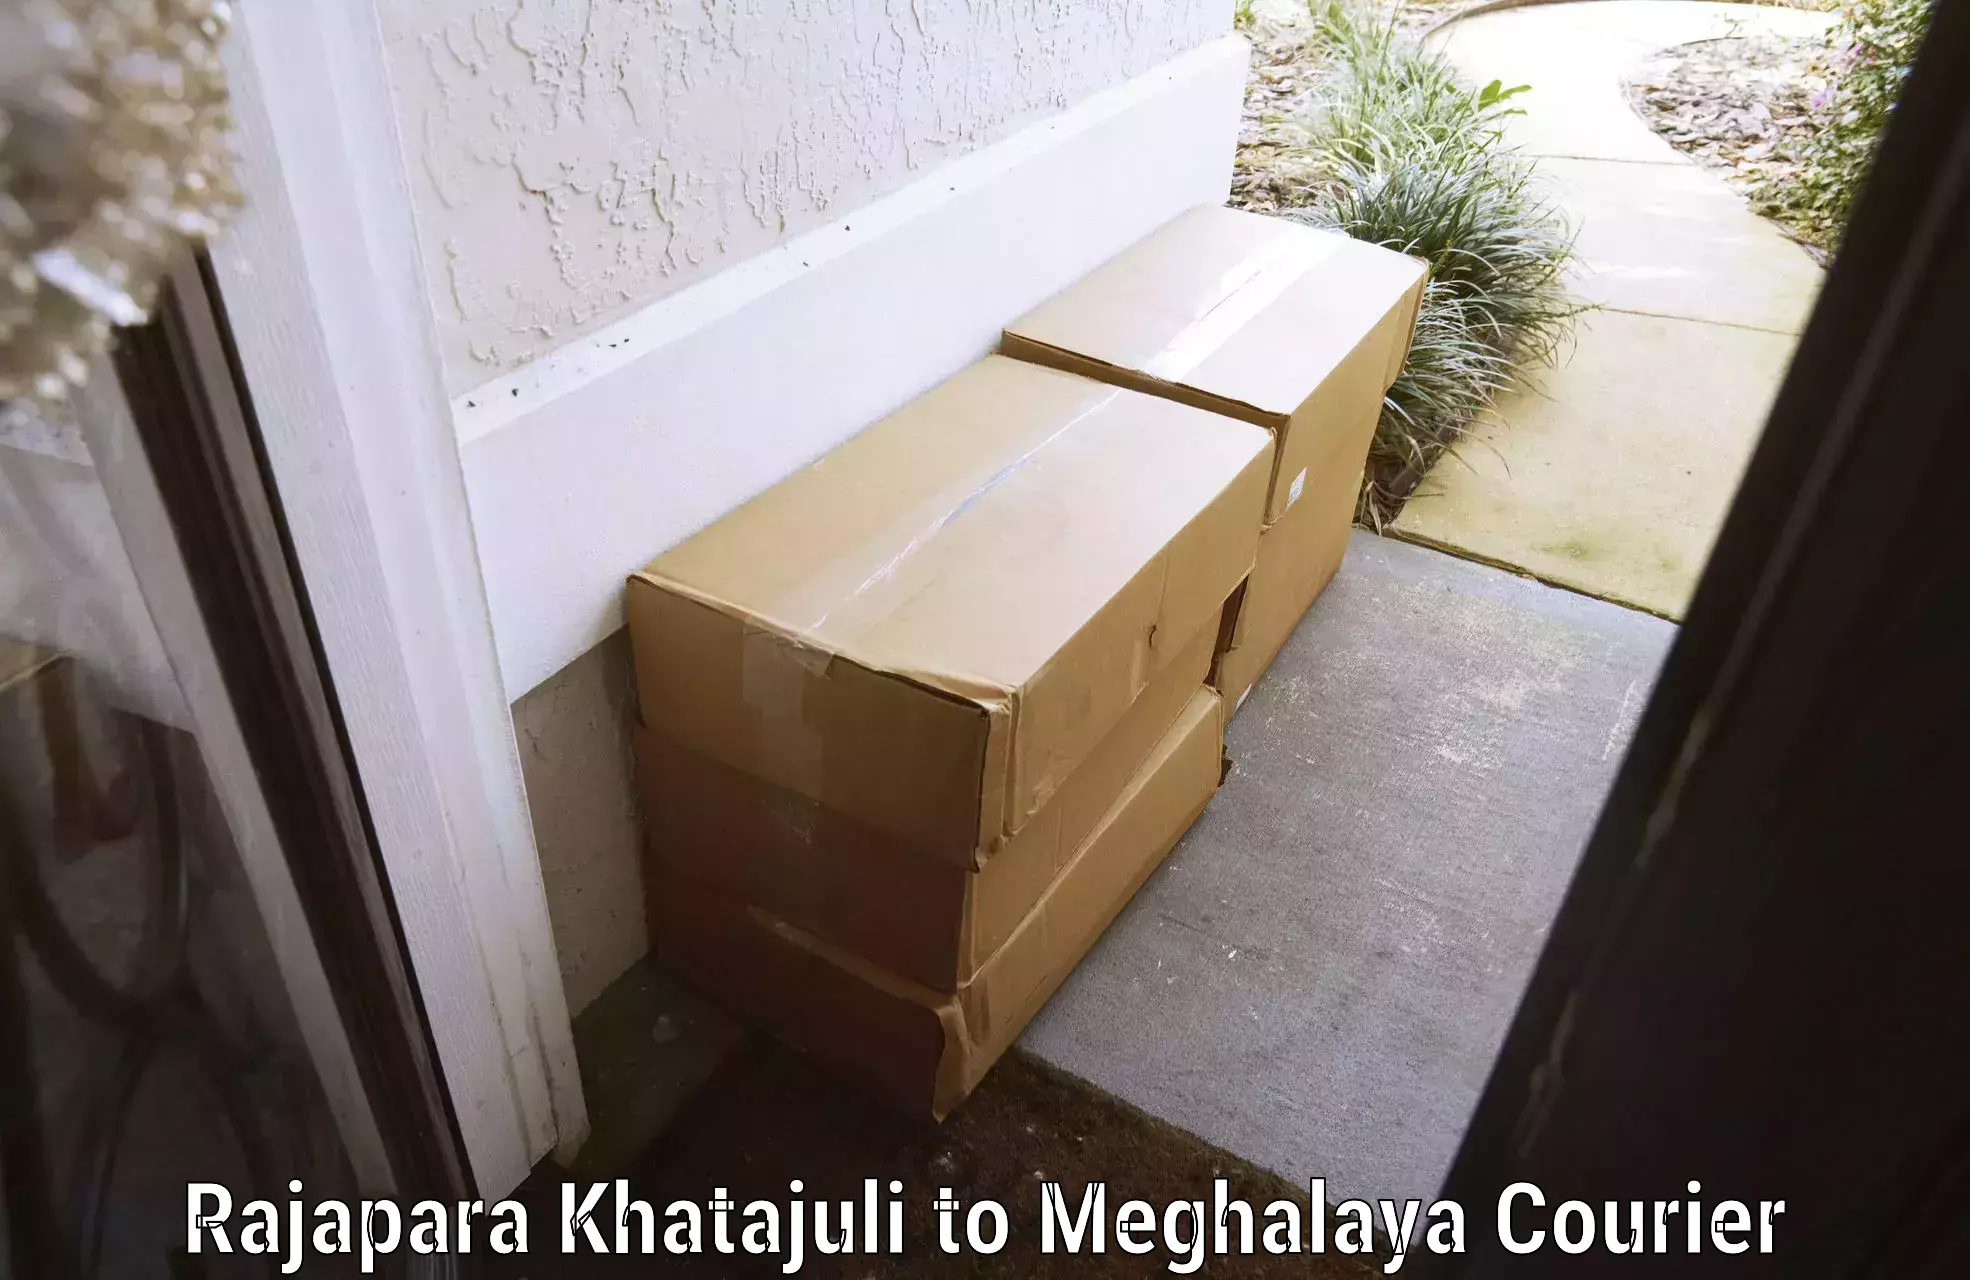 Luggage shipment specialists Rajapara Khatajuli to Nongpoh